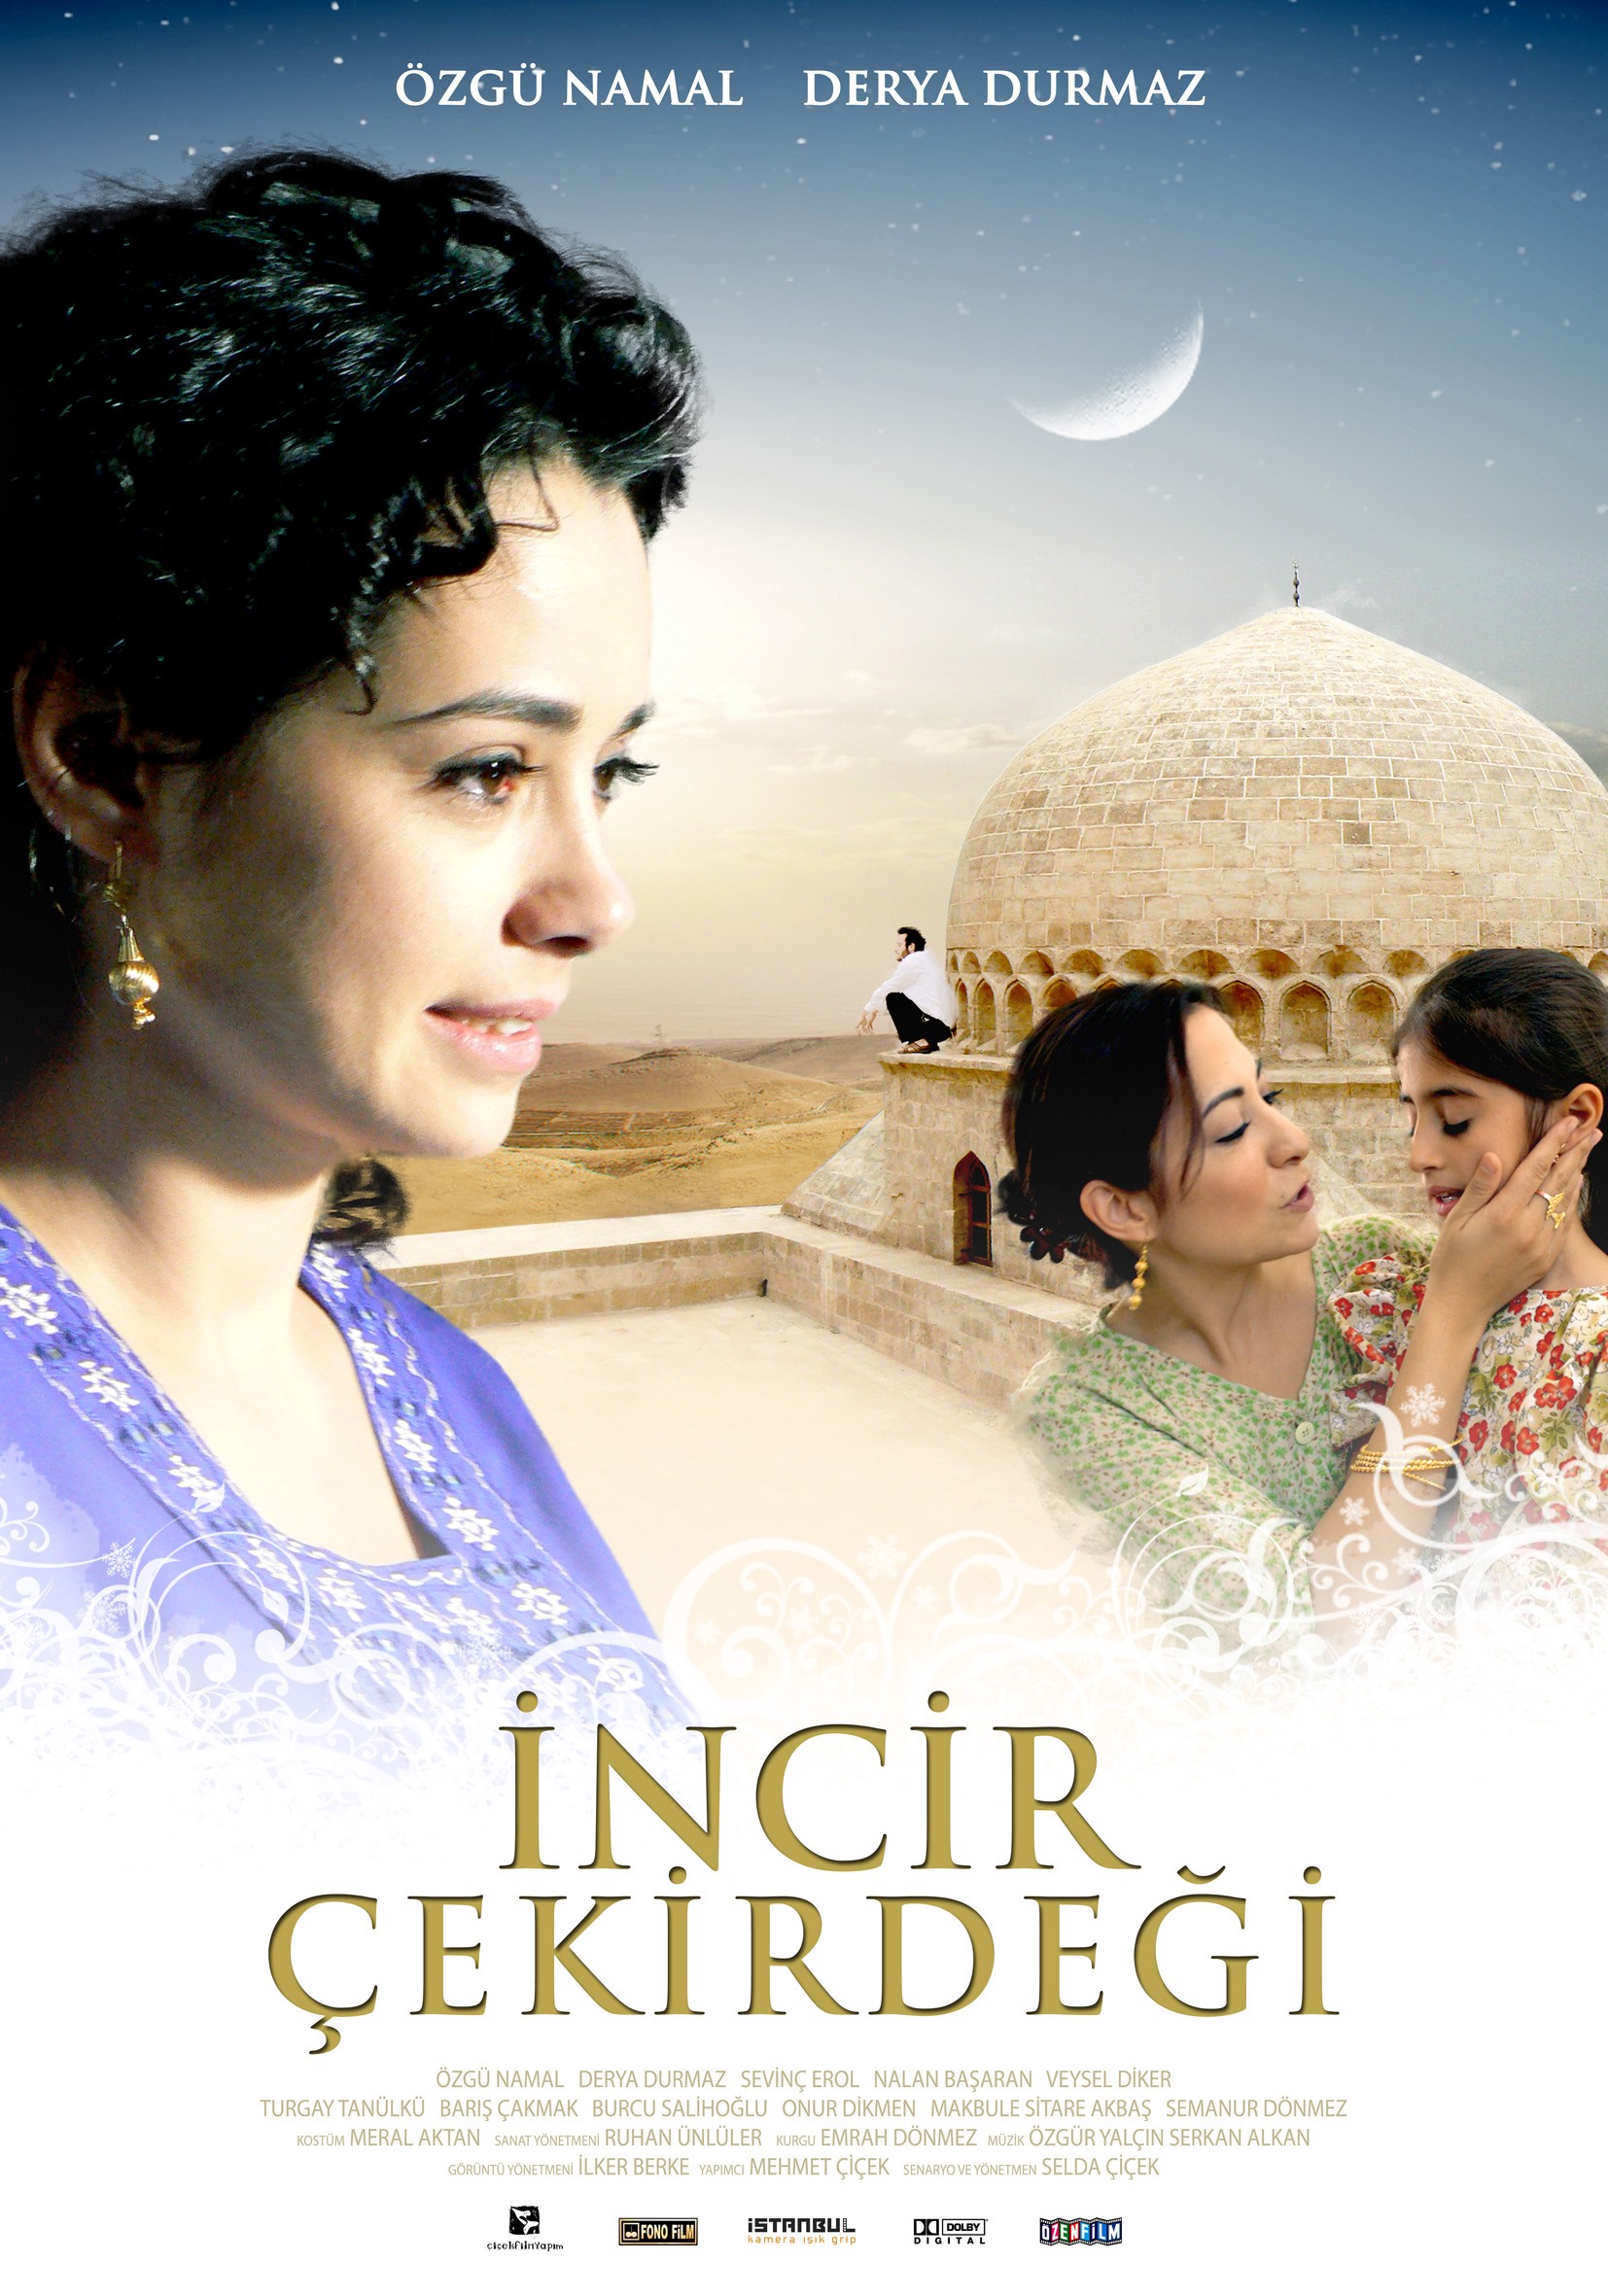 Mega Sized Movie Poster Image for Incir çekirdegi 